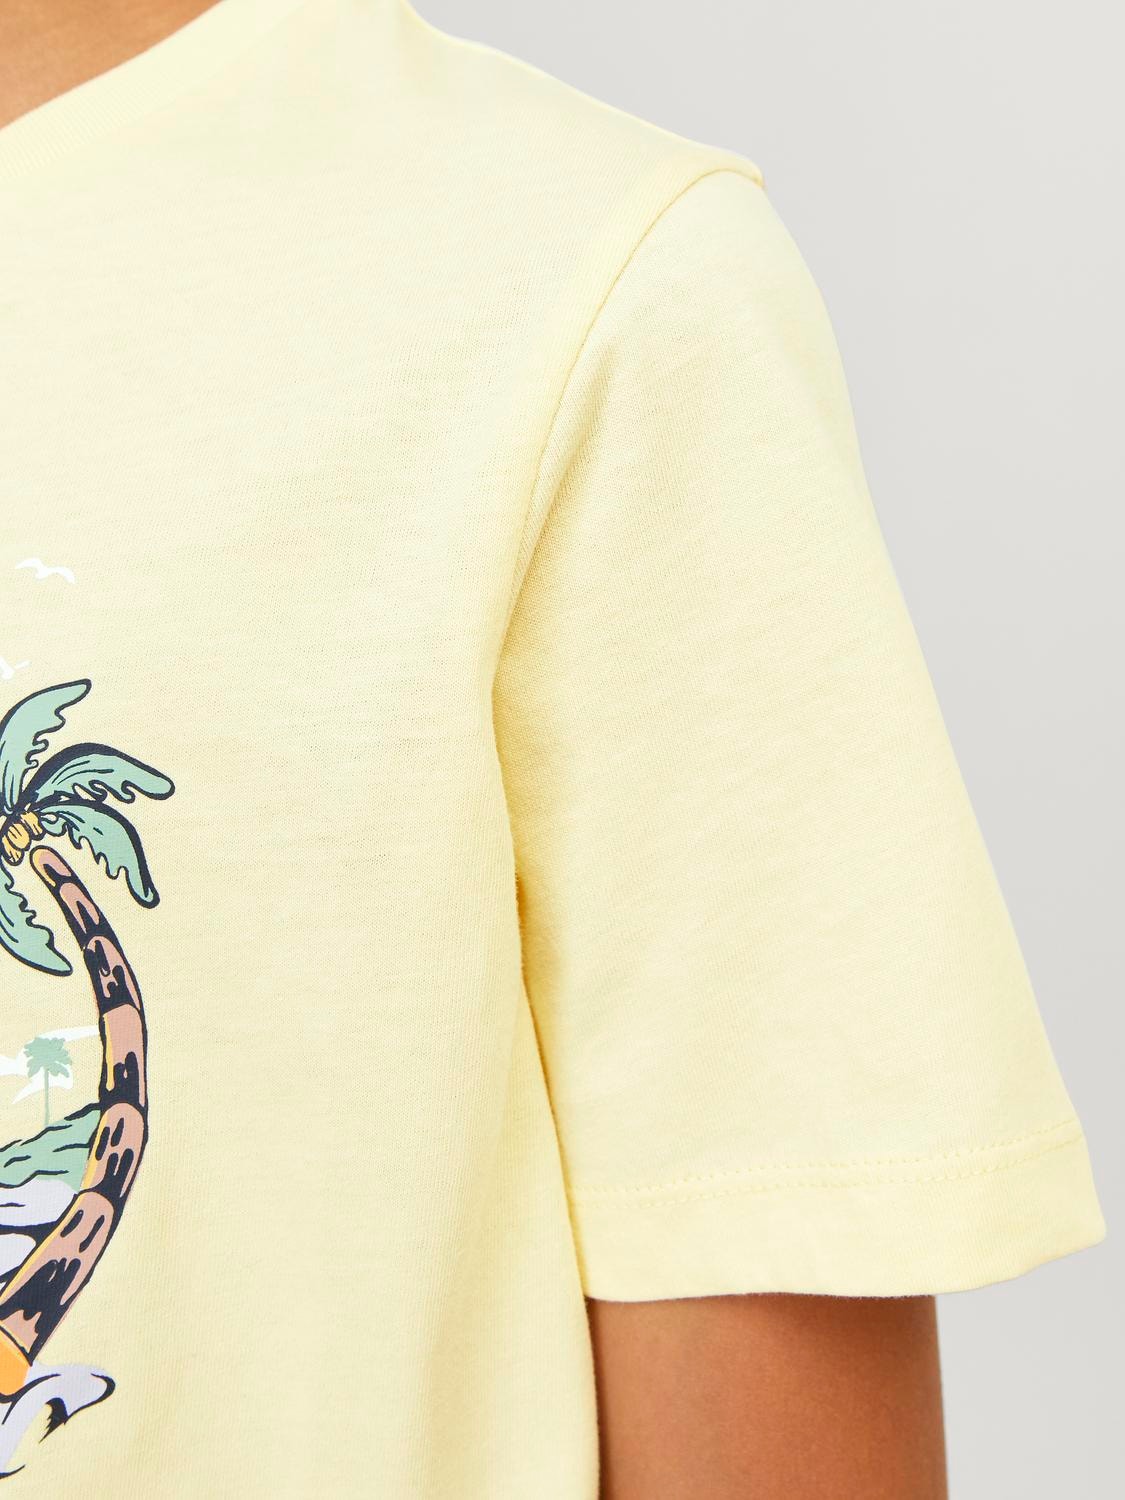 Jack & Jones T-shirt Estampar Para meninos -French Vanilla - 12249732